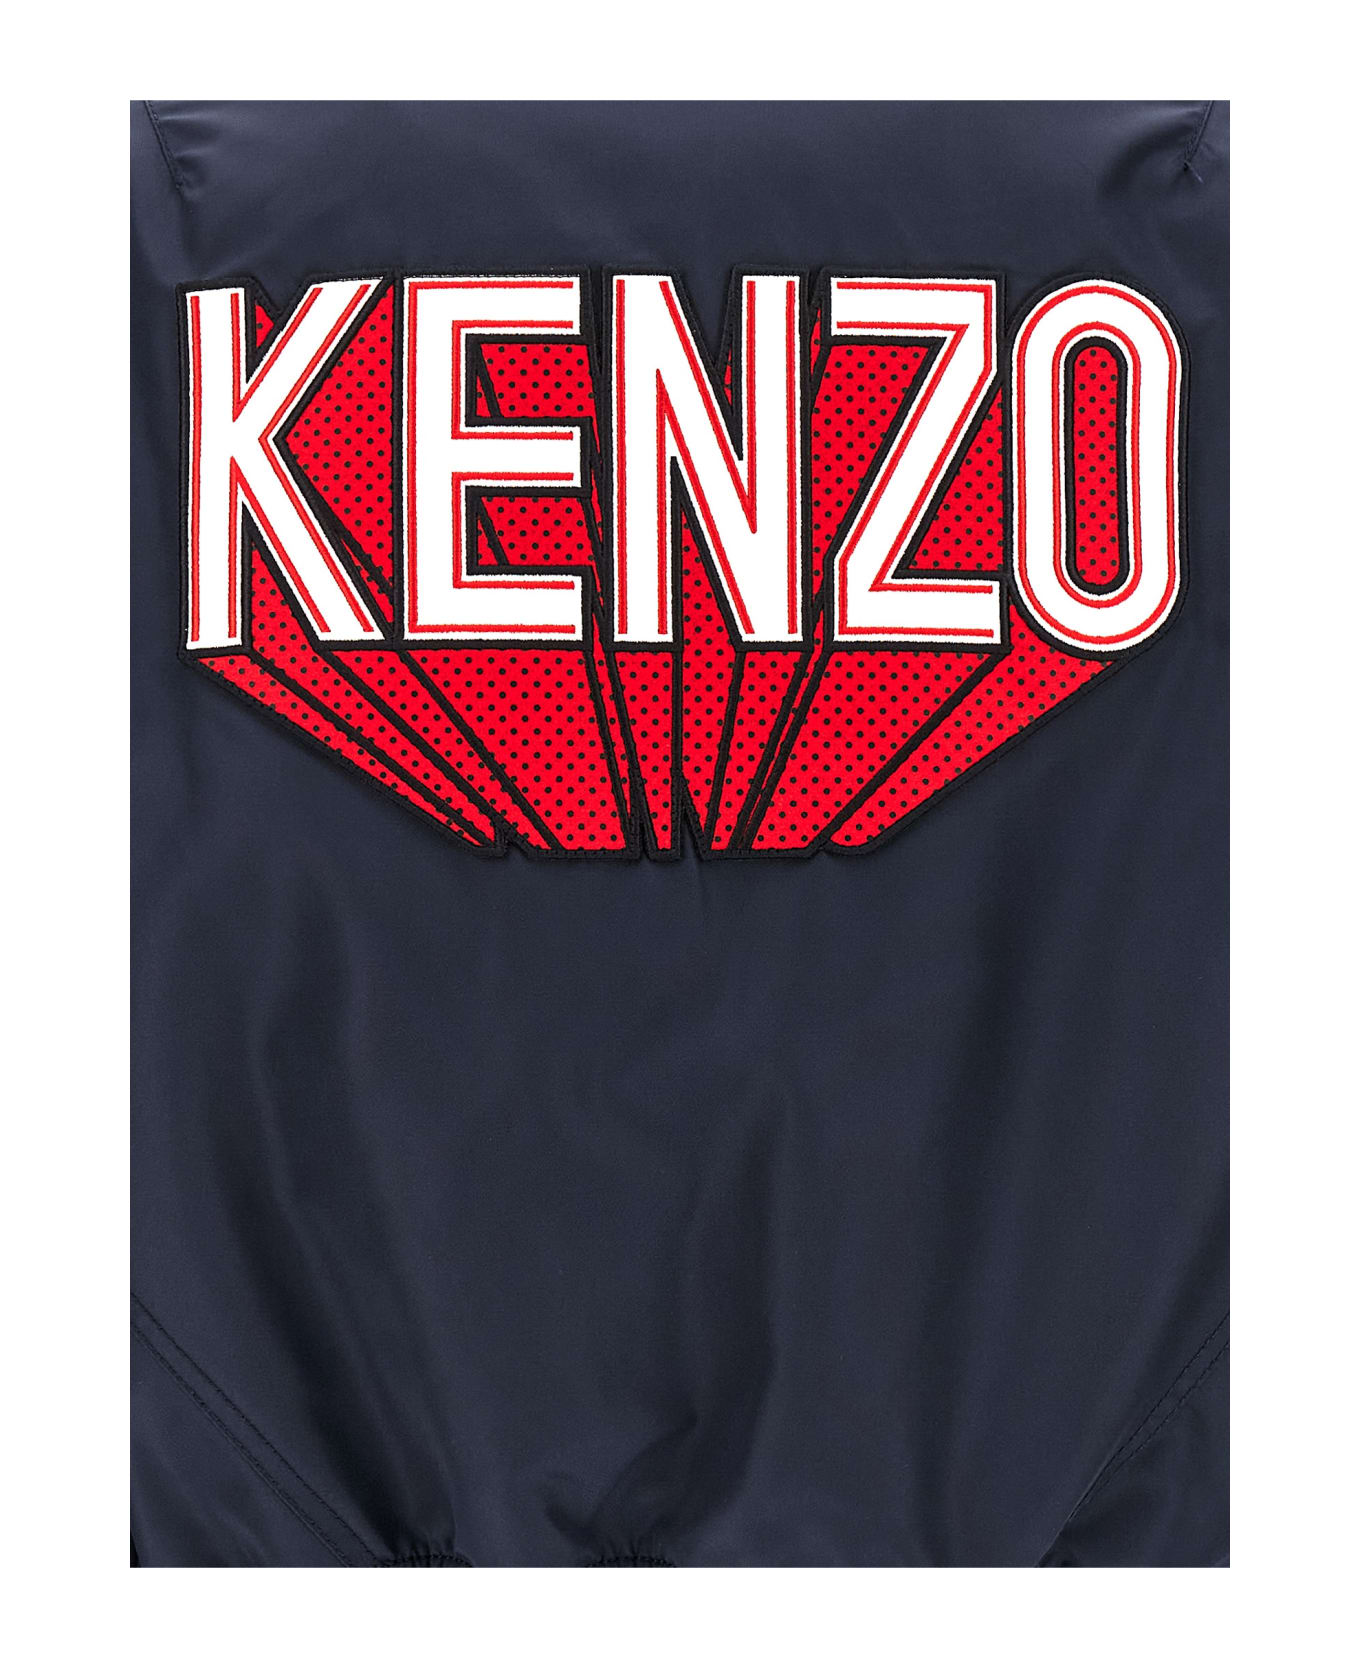 Kenzo 'kenzo 3d' Bomber Jacket - Blue ジャケット